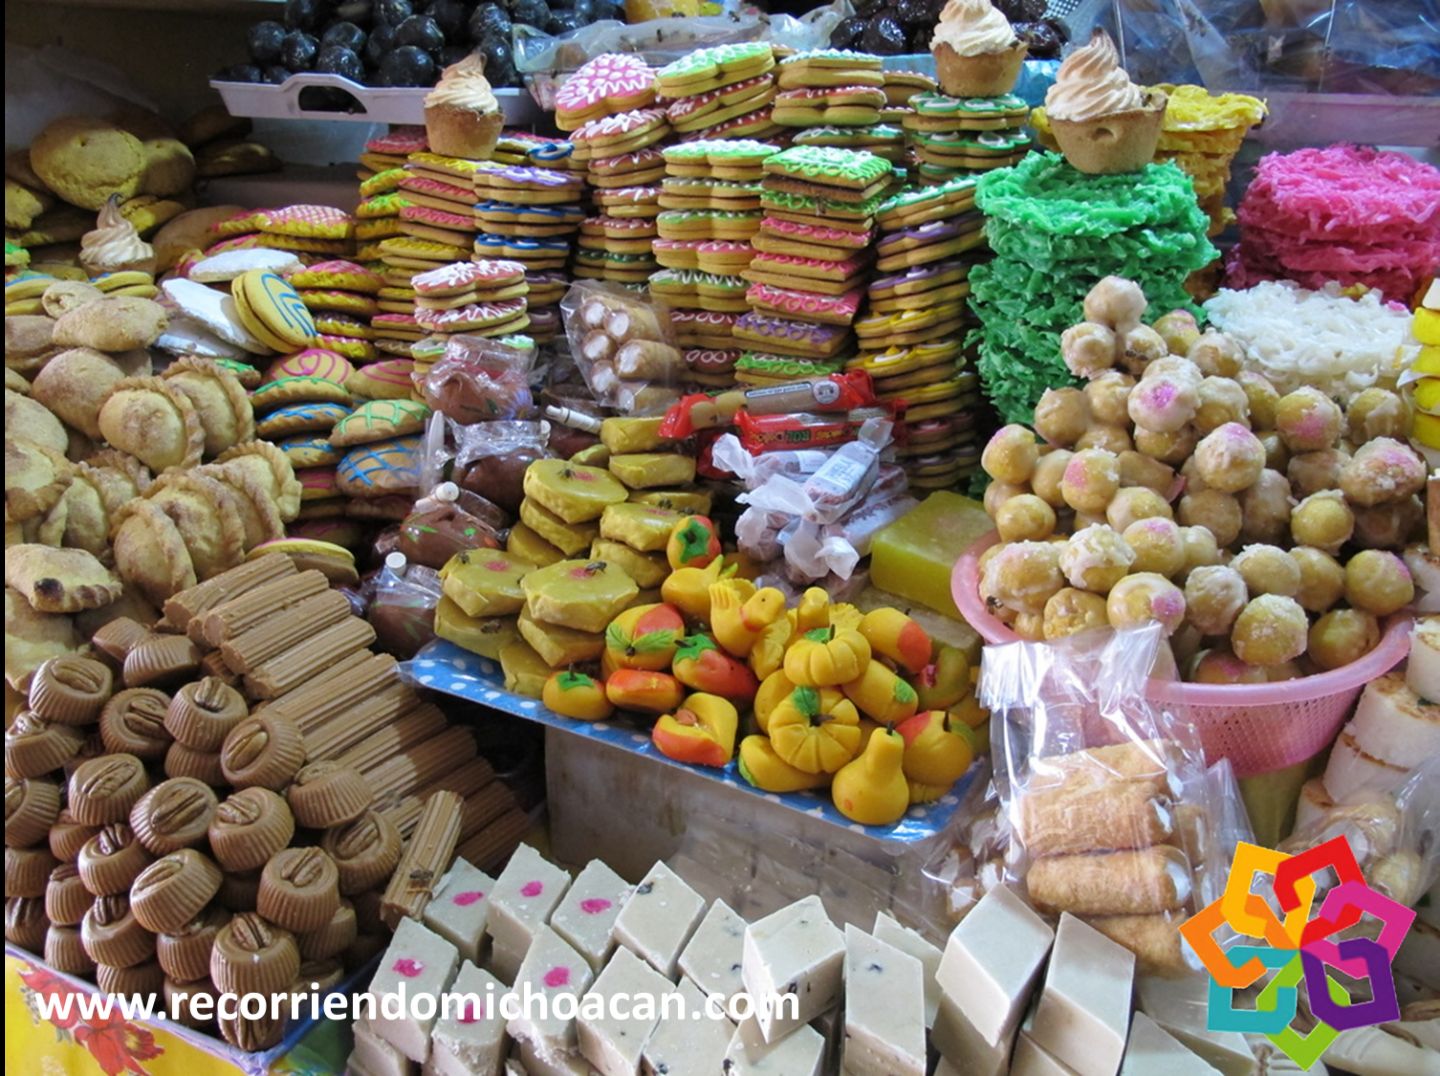 El museo más dulce de México está en la Ciudad de Morelia, con
una gran variedad de dulces típicos de toda la región michoacana
